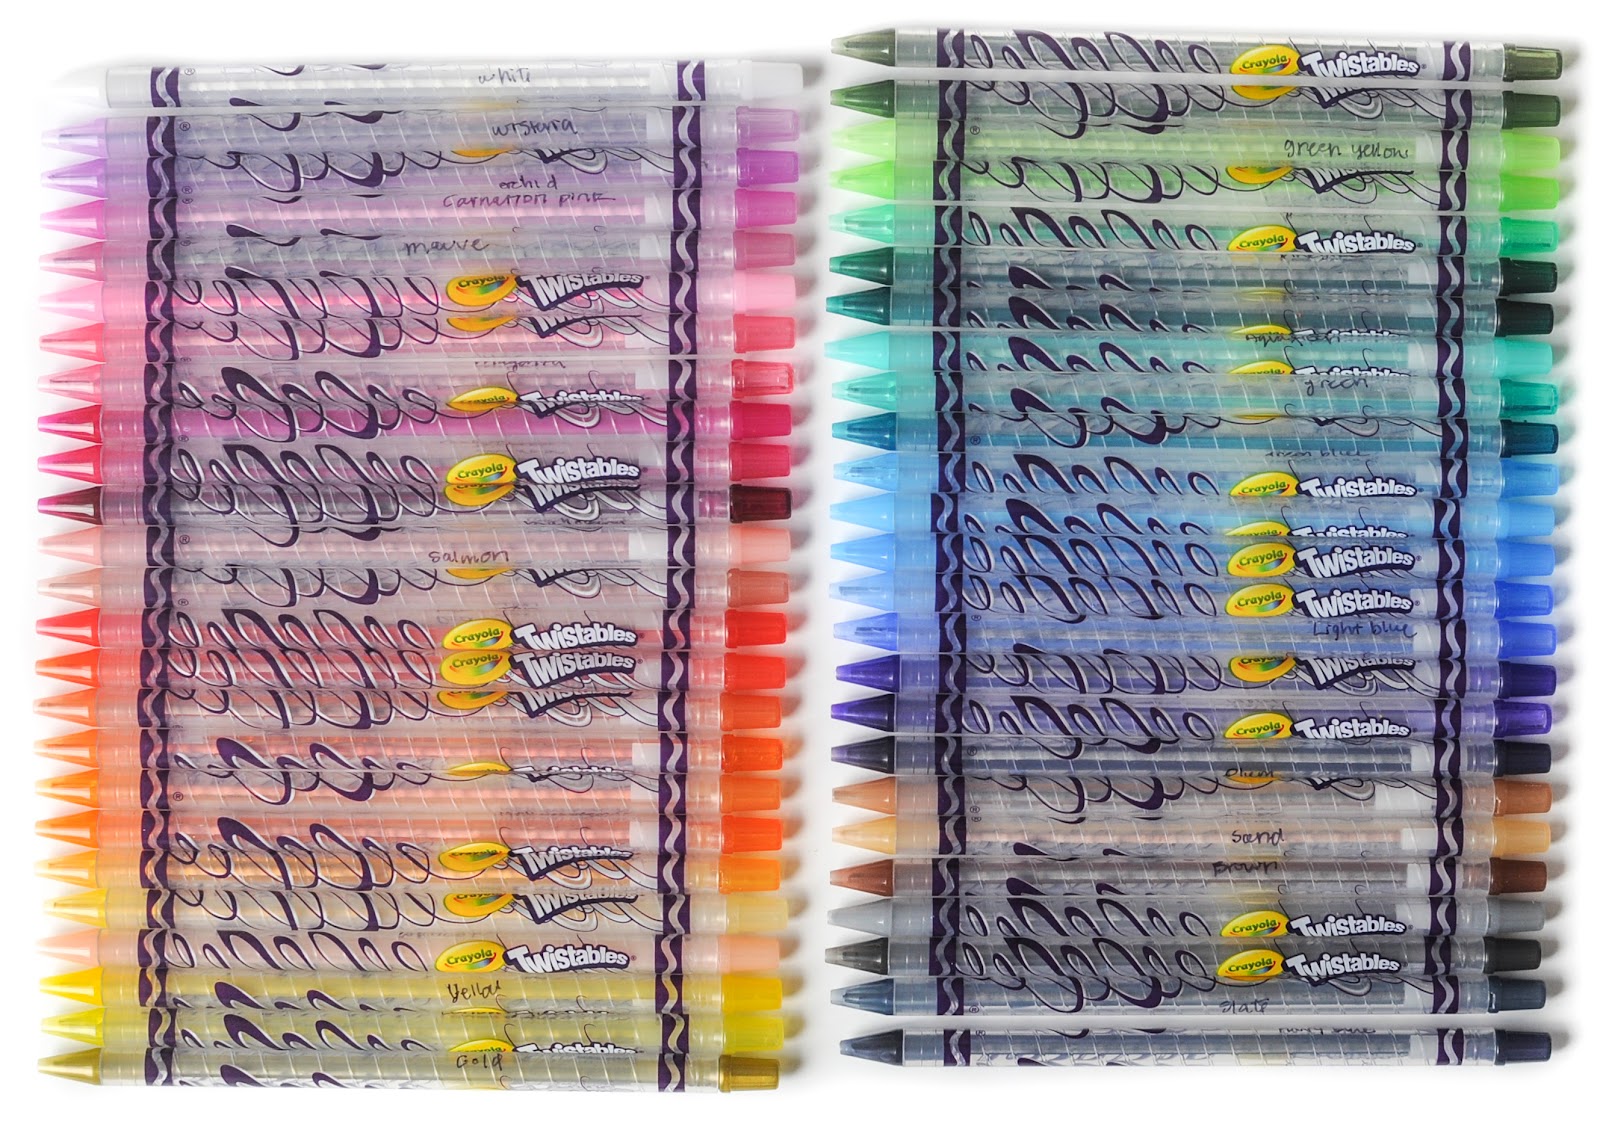 Crayola Colored Pencils 50-Color Set - 50-Count